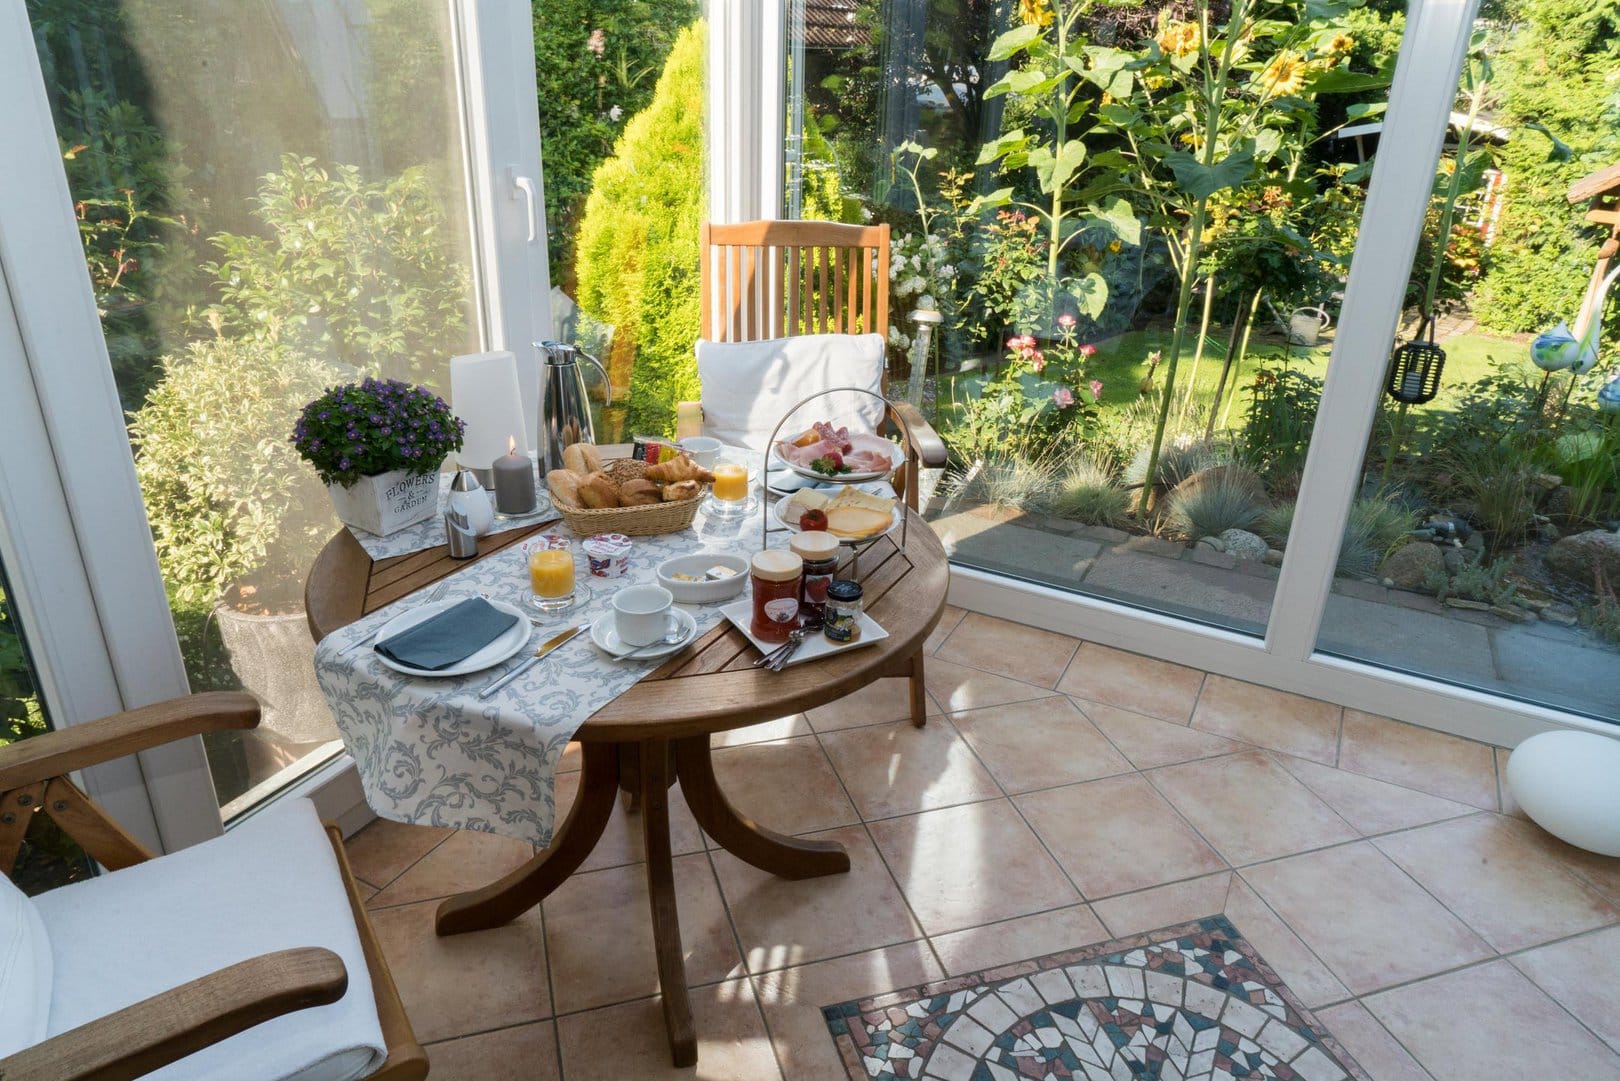 Ein hölzerner Tisch gedeckt mit einer Brotauswahl, Wurst und Käse, sowie Marmeladen, Joghurts und Kaffee steht im hellen Wintergarten, durch dessen Schreiben der grüne Garten zu sehen ist.